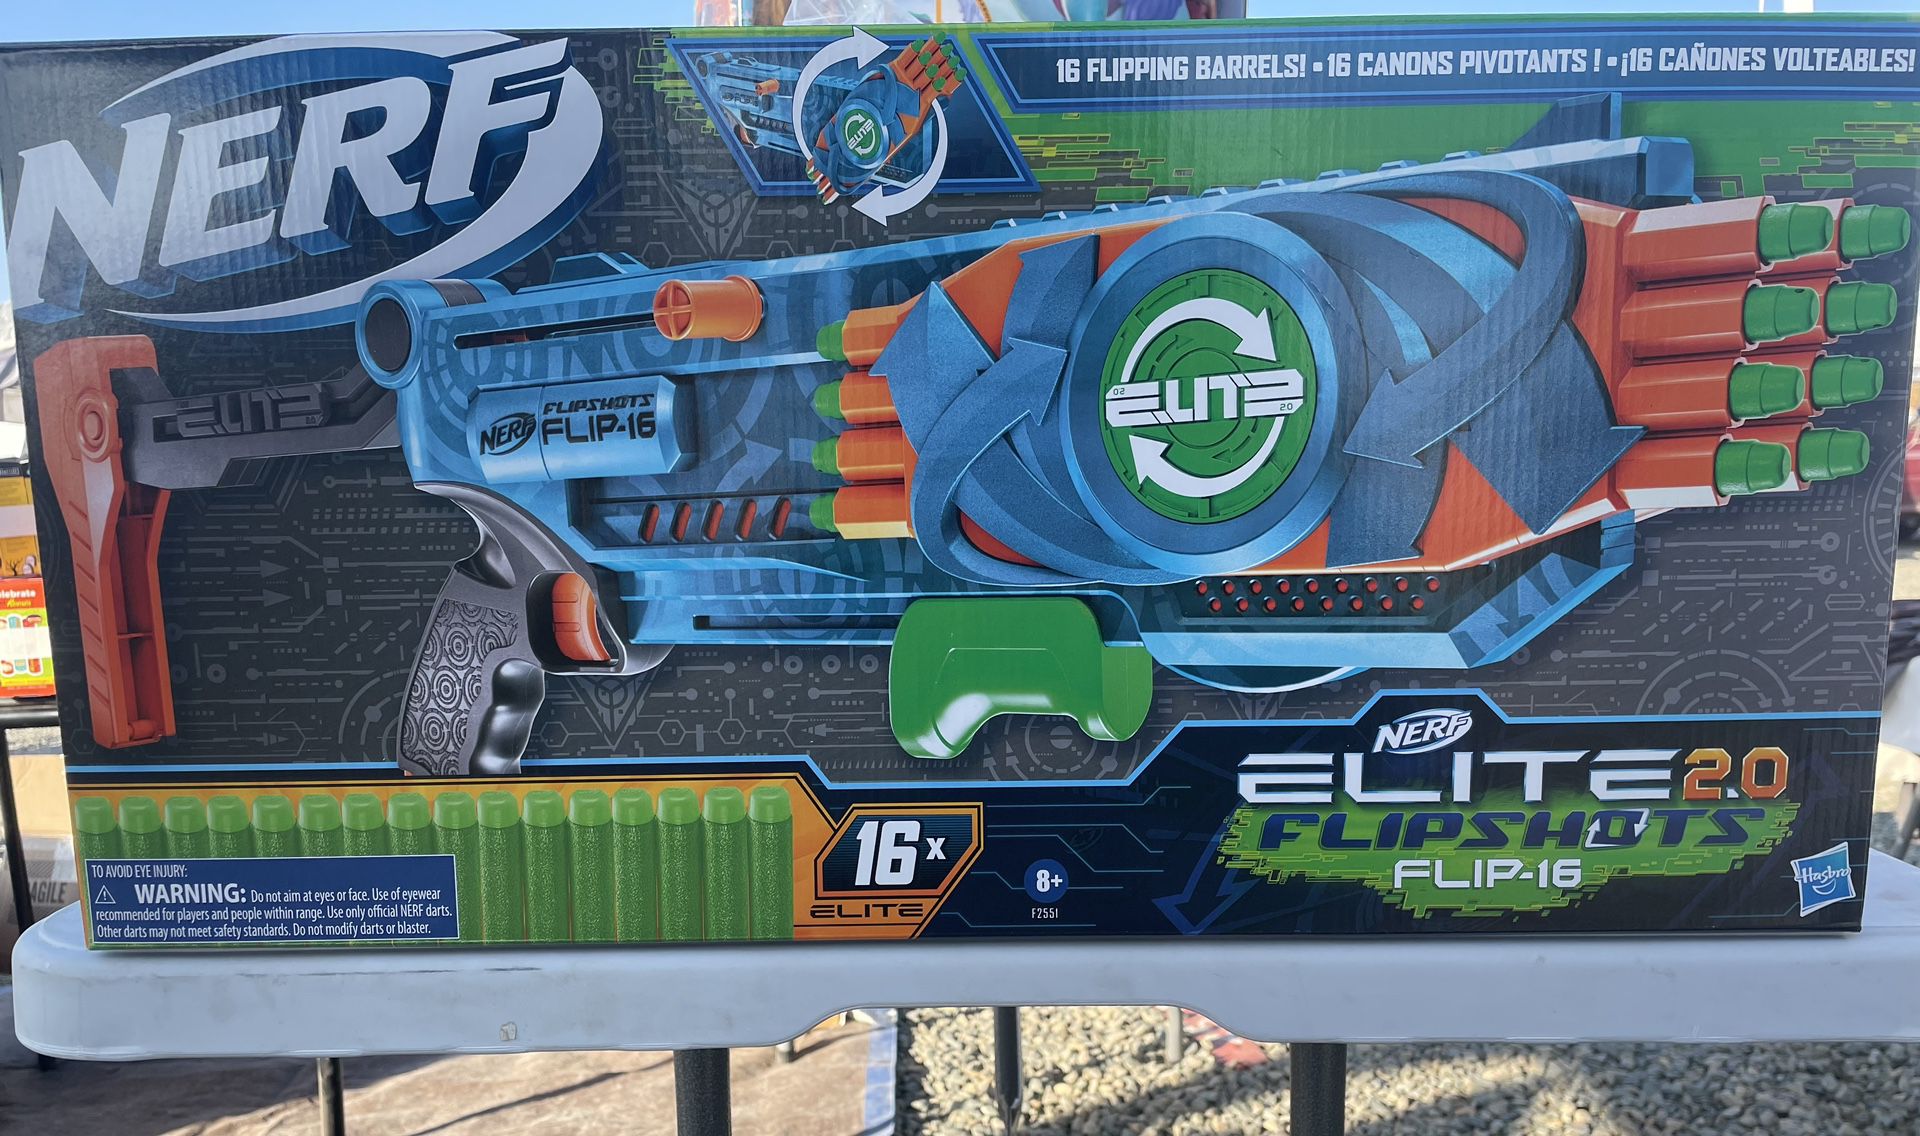 NERF Elite 2.0 Flipshots Flip-16 Blaster